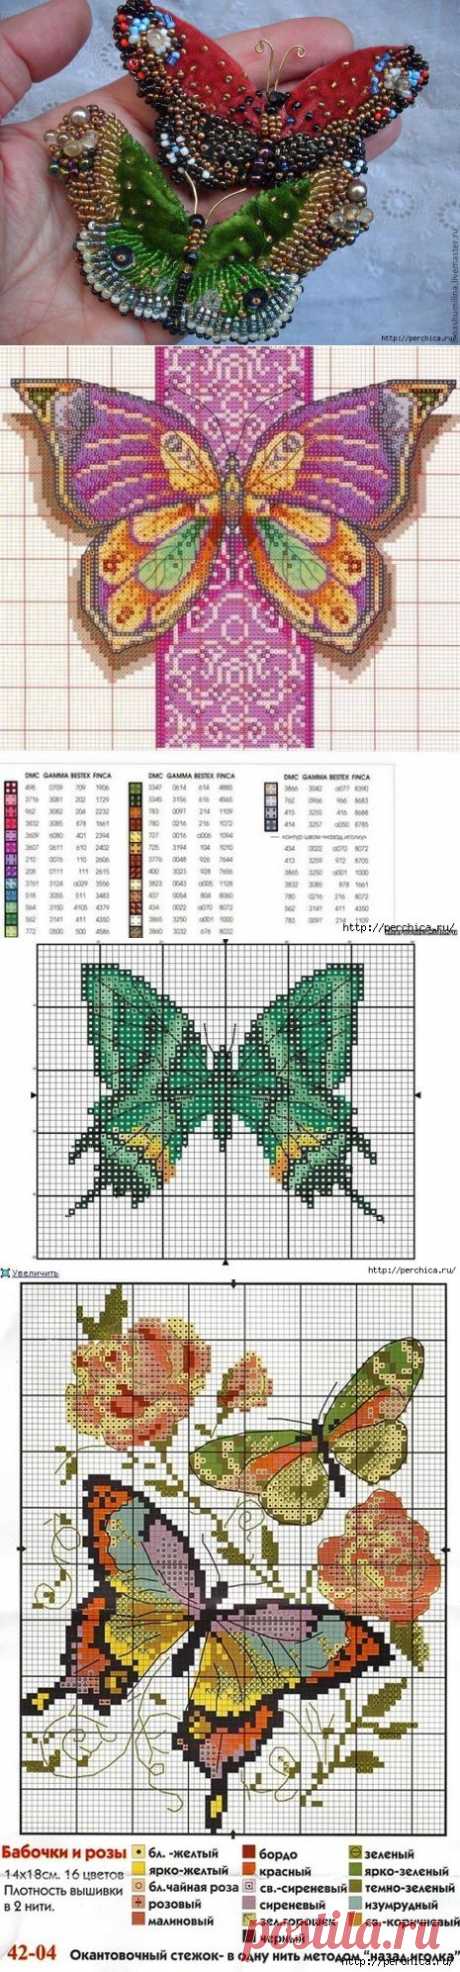 Схемы для вышивки бабочек бисером